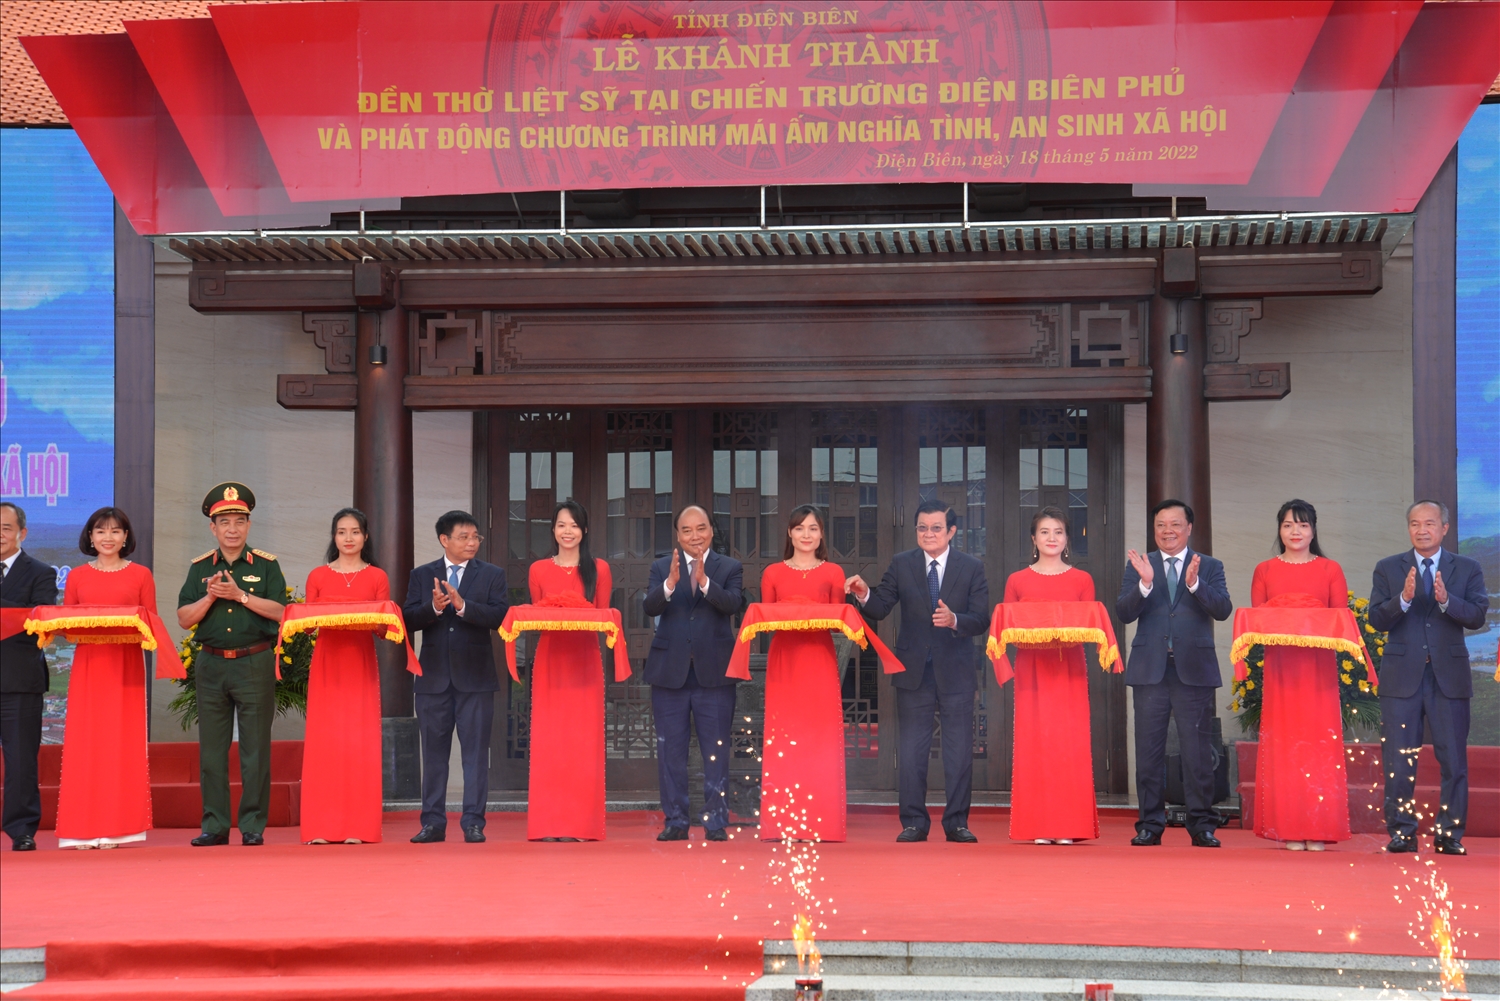  Chủ tịch nước Nguyễn Xuân Phúc và các đại biểu tham gia Lễ cắt băng khánh thành Đền thờ liệt sĩ tại Chiến trường Điện Biên Phủ